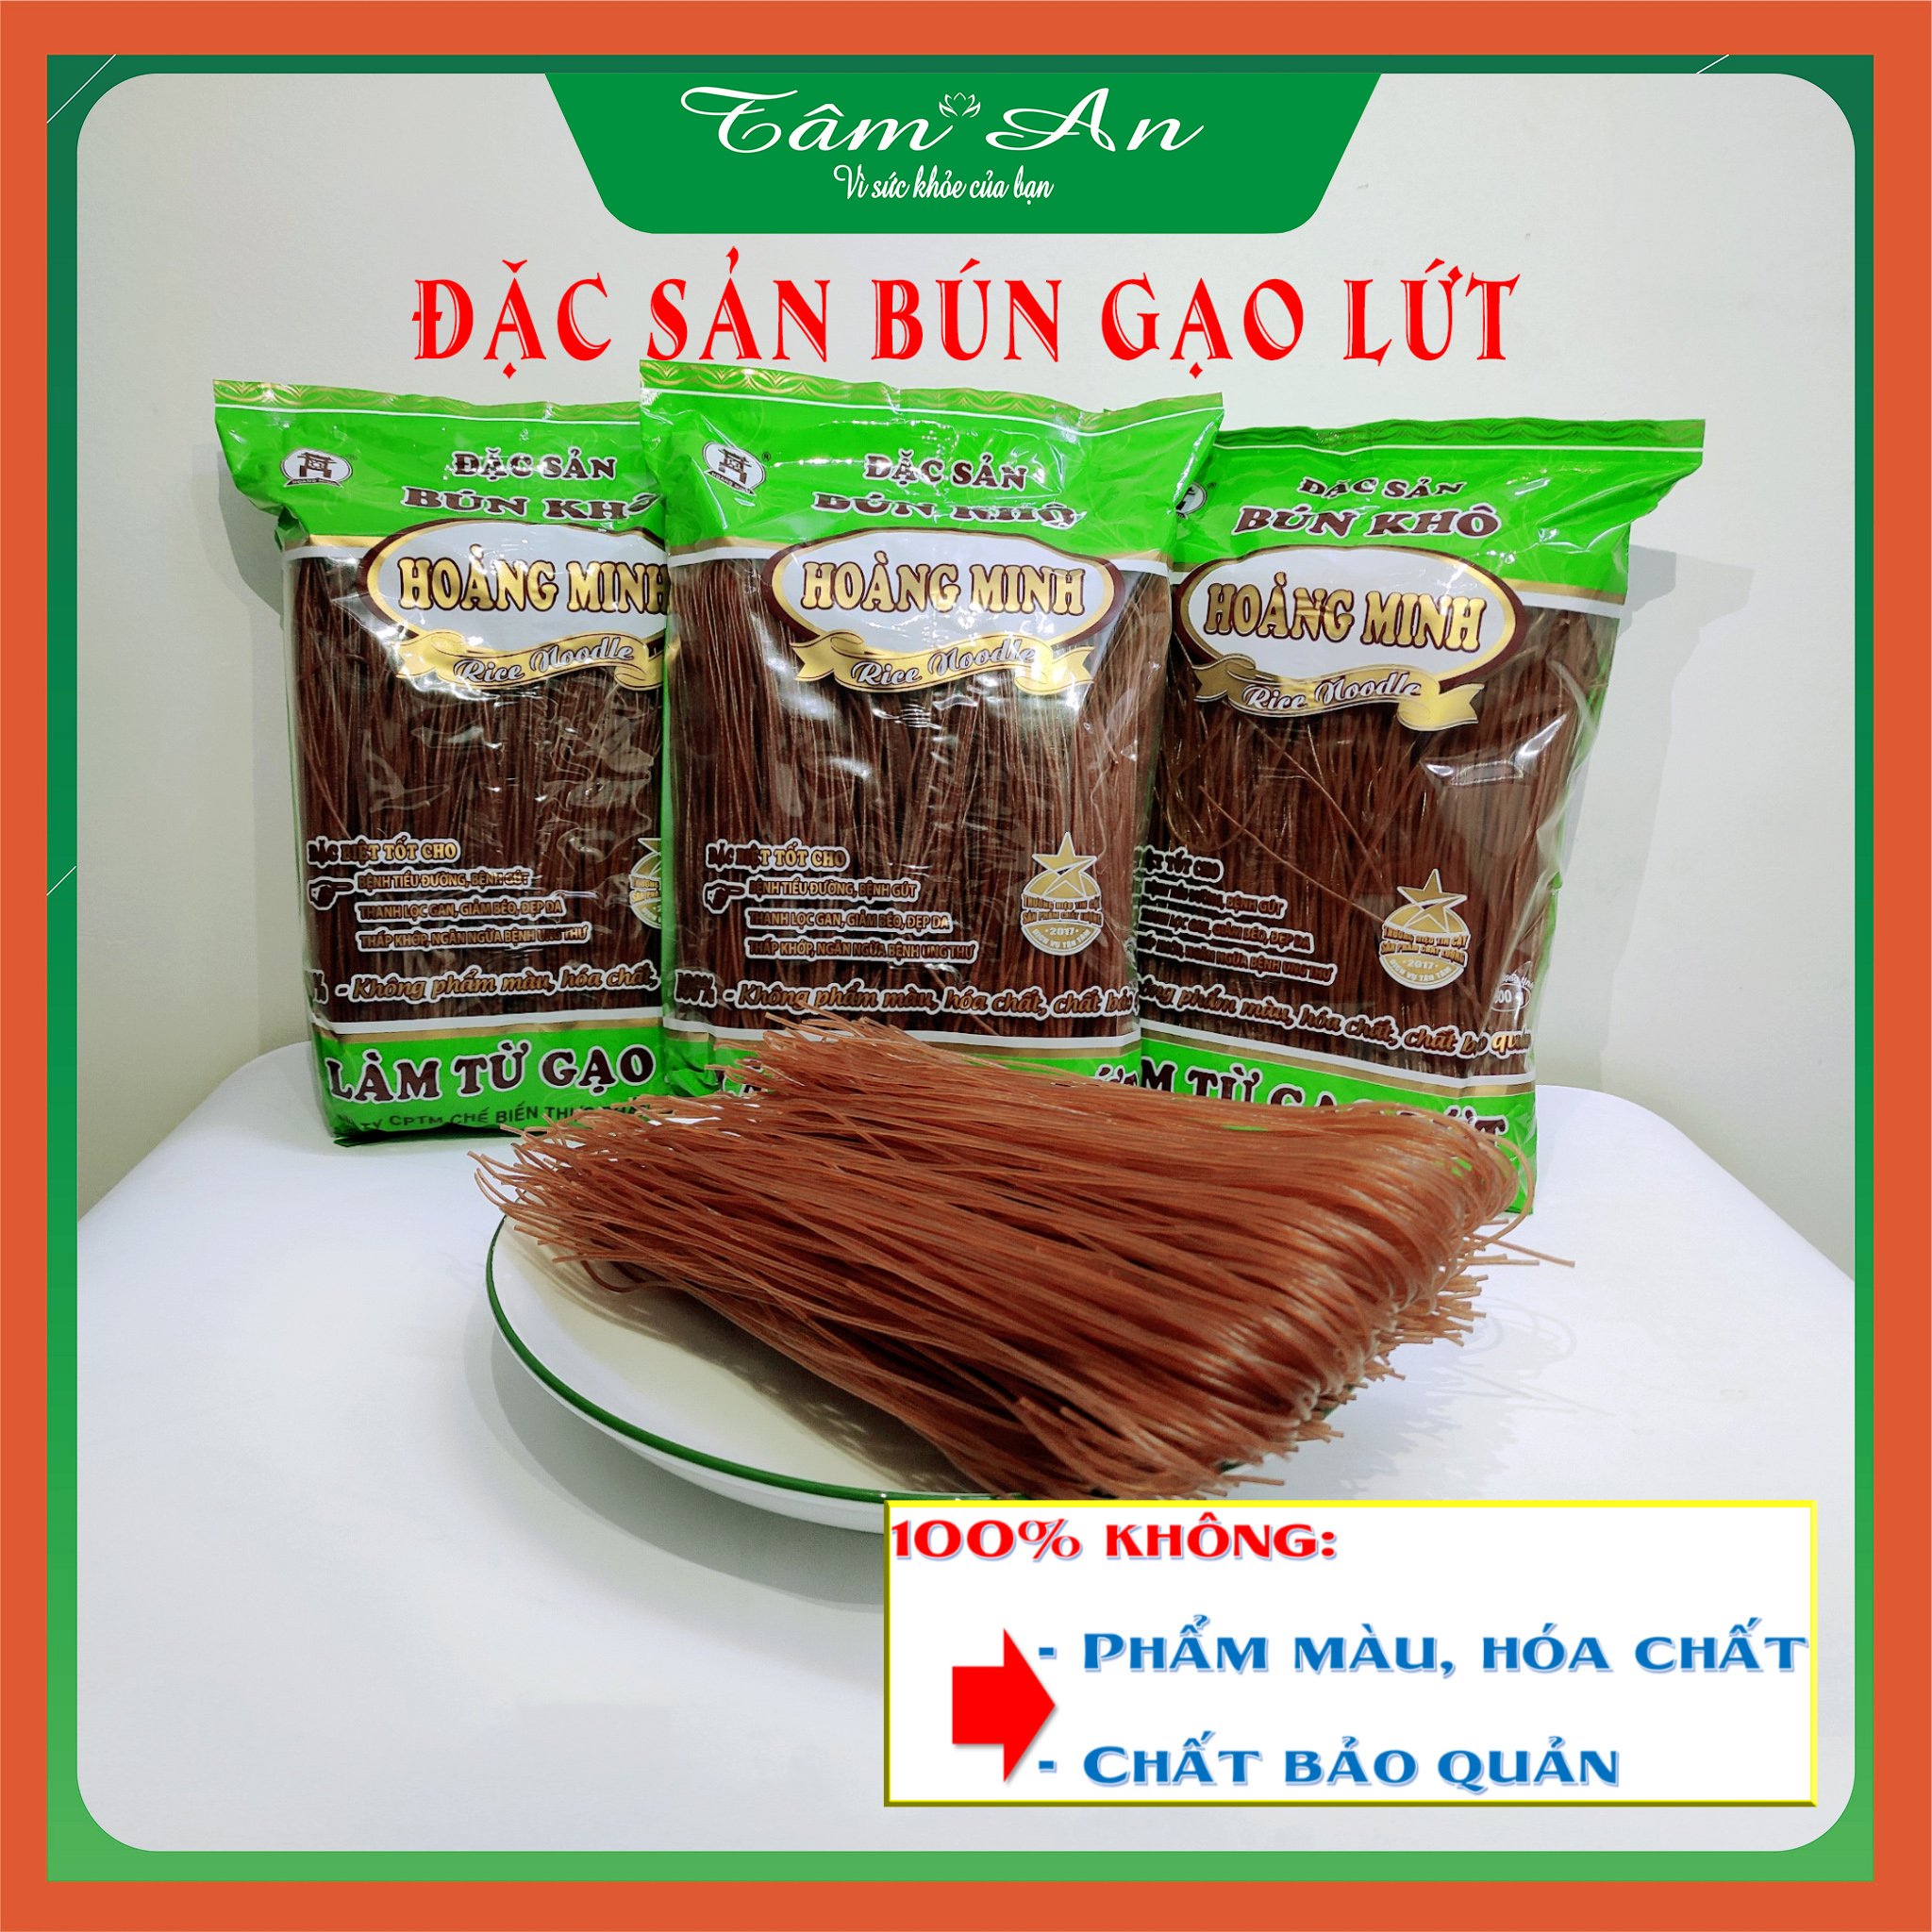 Đặc sản Bún gạo lứt Hoàng Minh 500g tốt cho người ăn kiêng giảm cân và bị